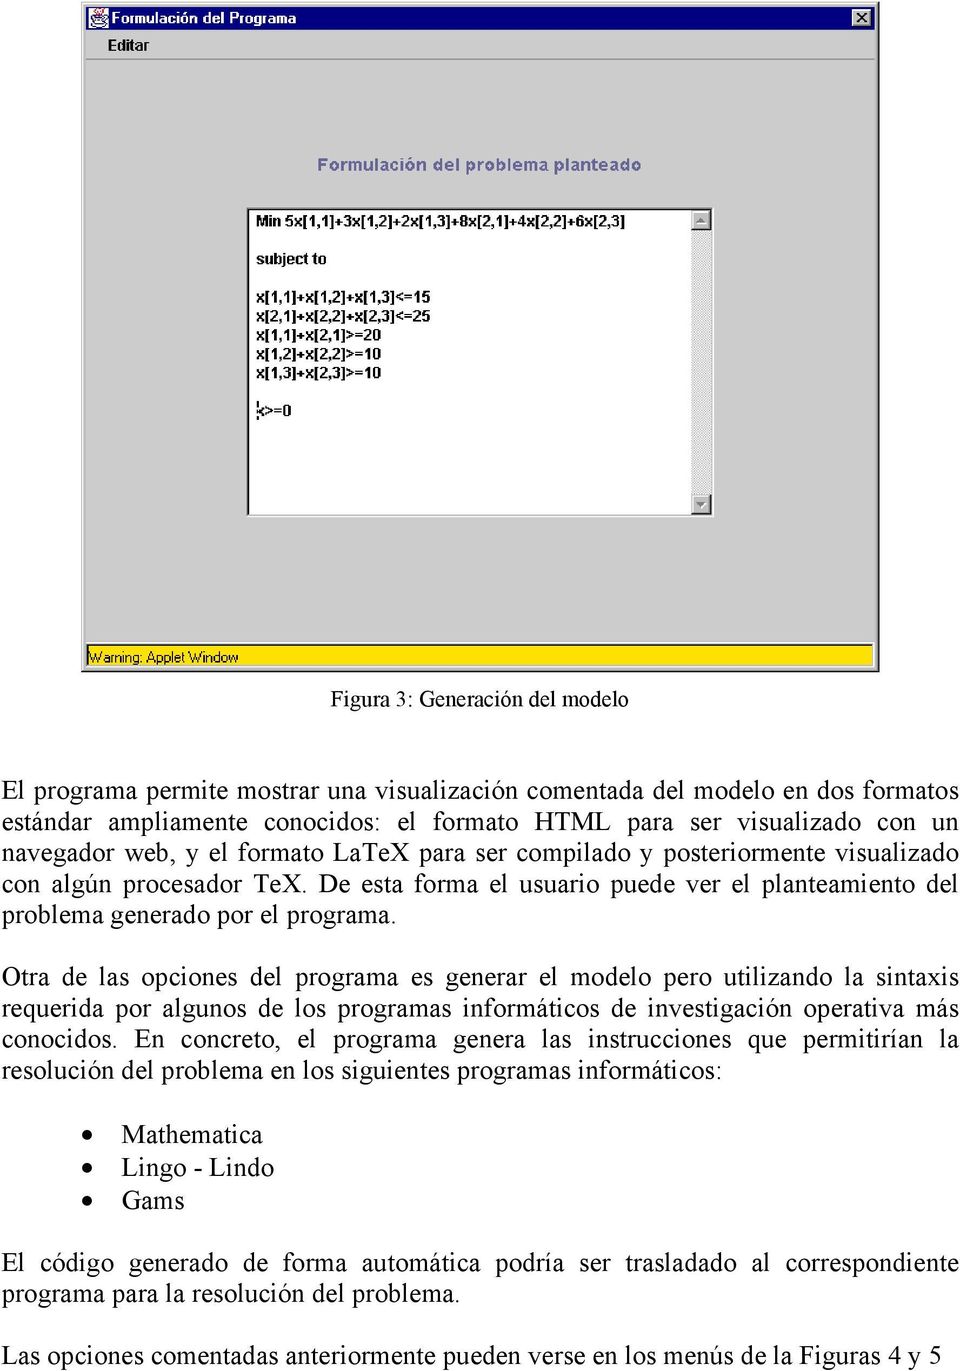 Otra de las opciones del programa es generar el modelo pero utilizando la sintaxis requerida por algunos de los programas informáticos de investigación operativa más conocidos.